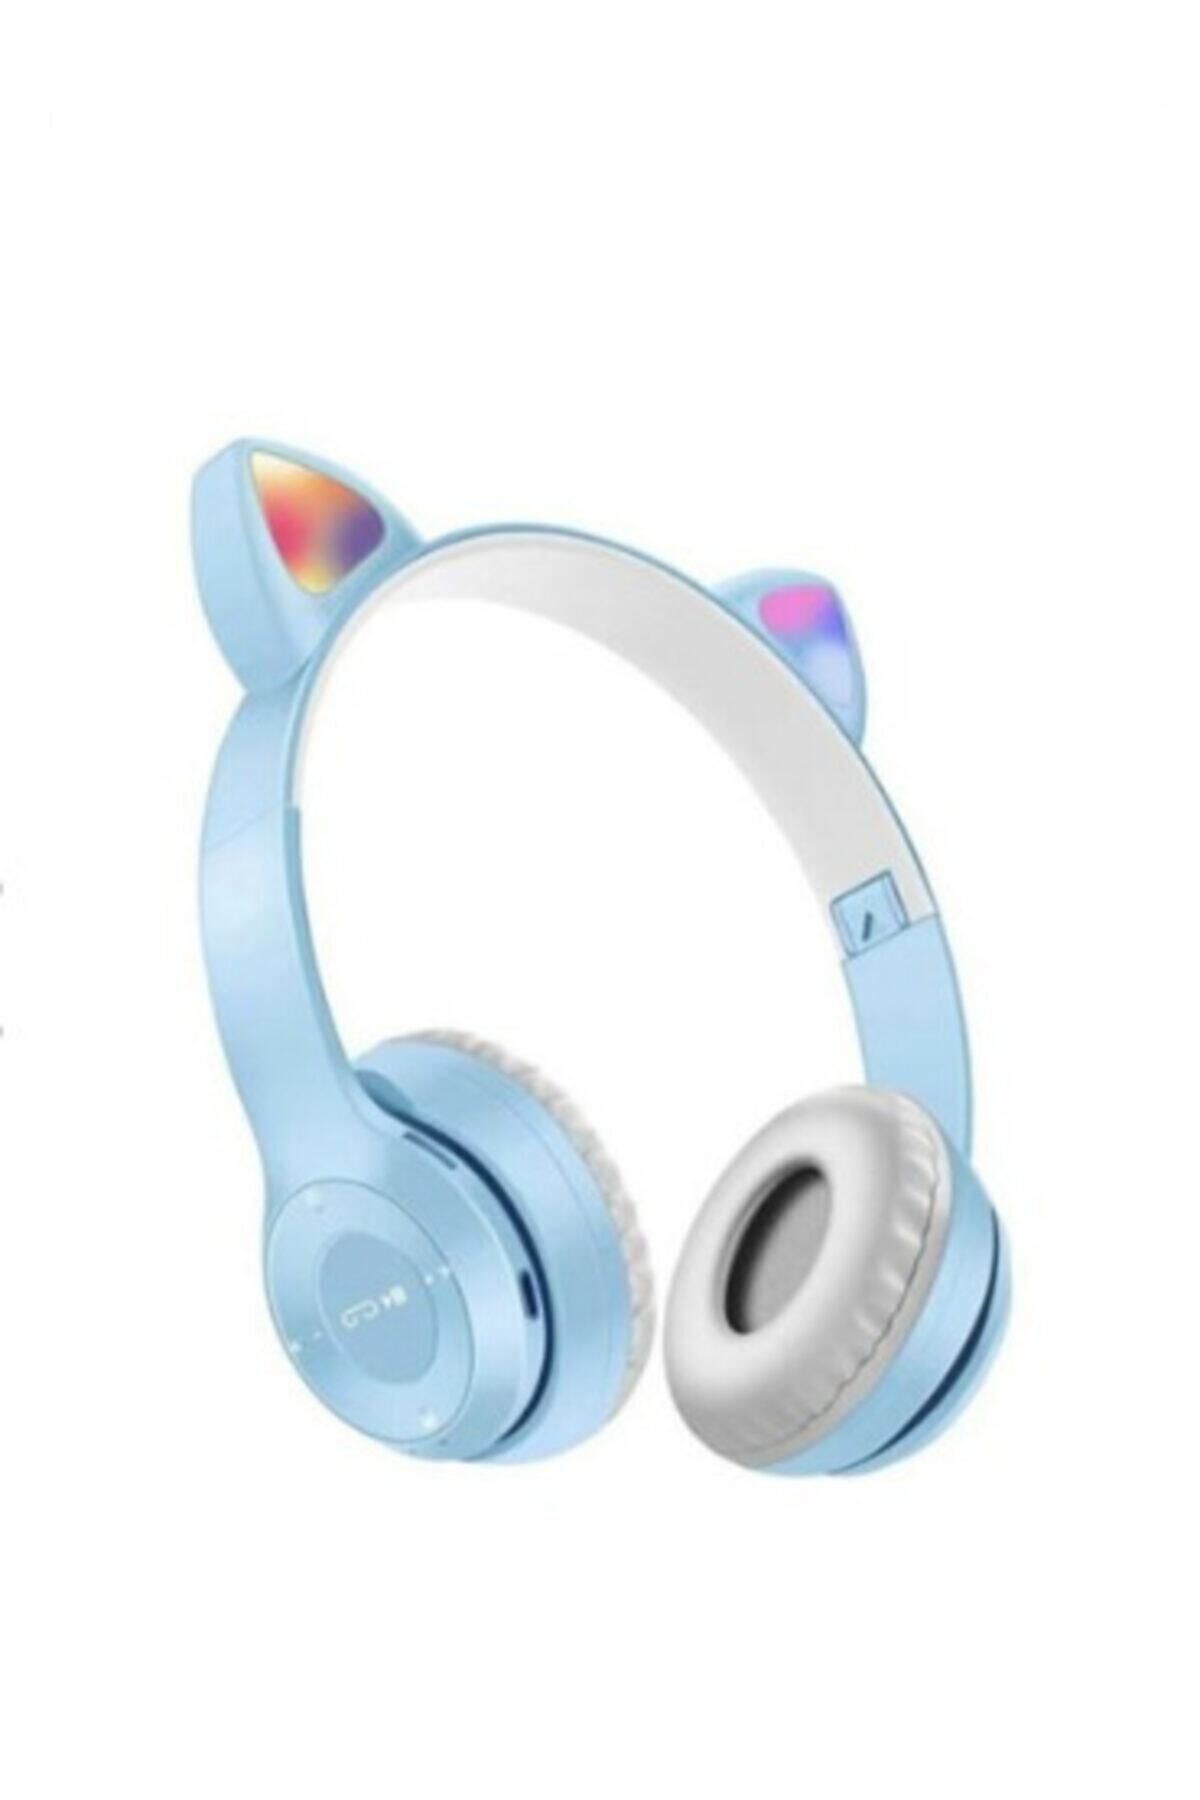 gnctech Kablosuz Bluetooth Kulaküstü Kedili P47m Kulaklık Rgb Işıklı Kedi Desenli Kulaklık